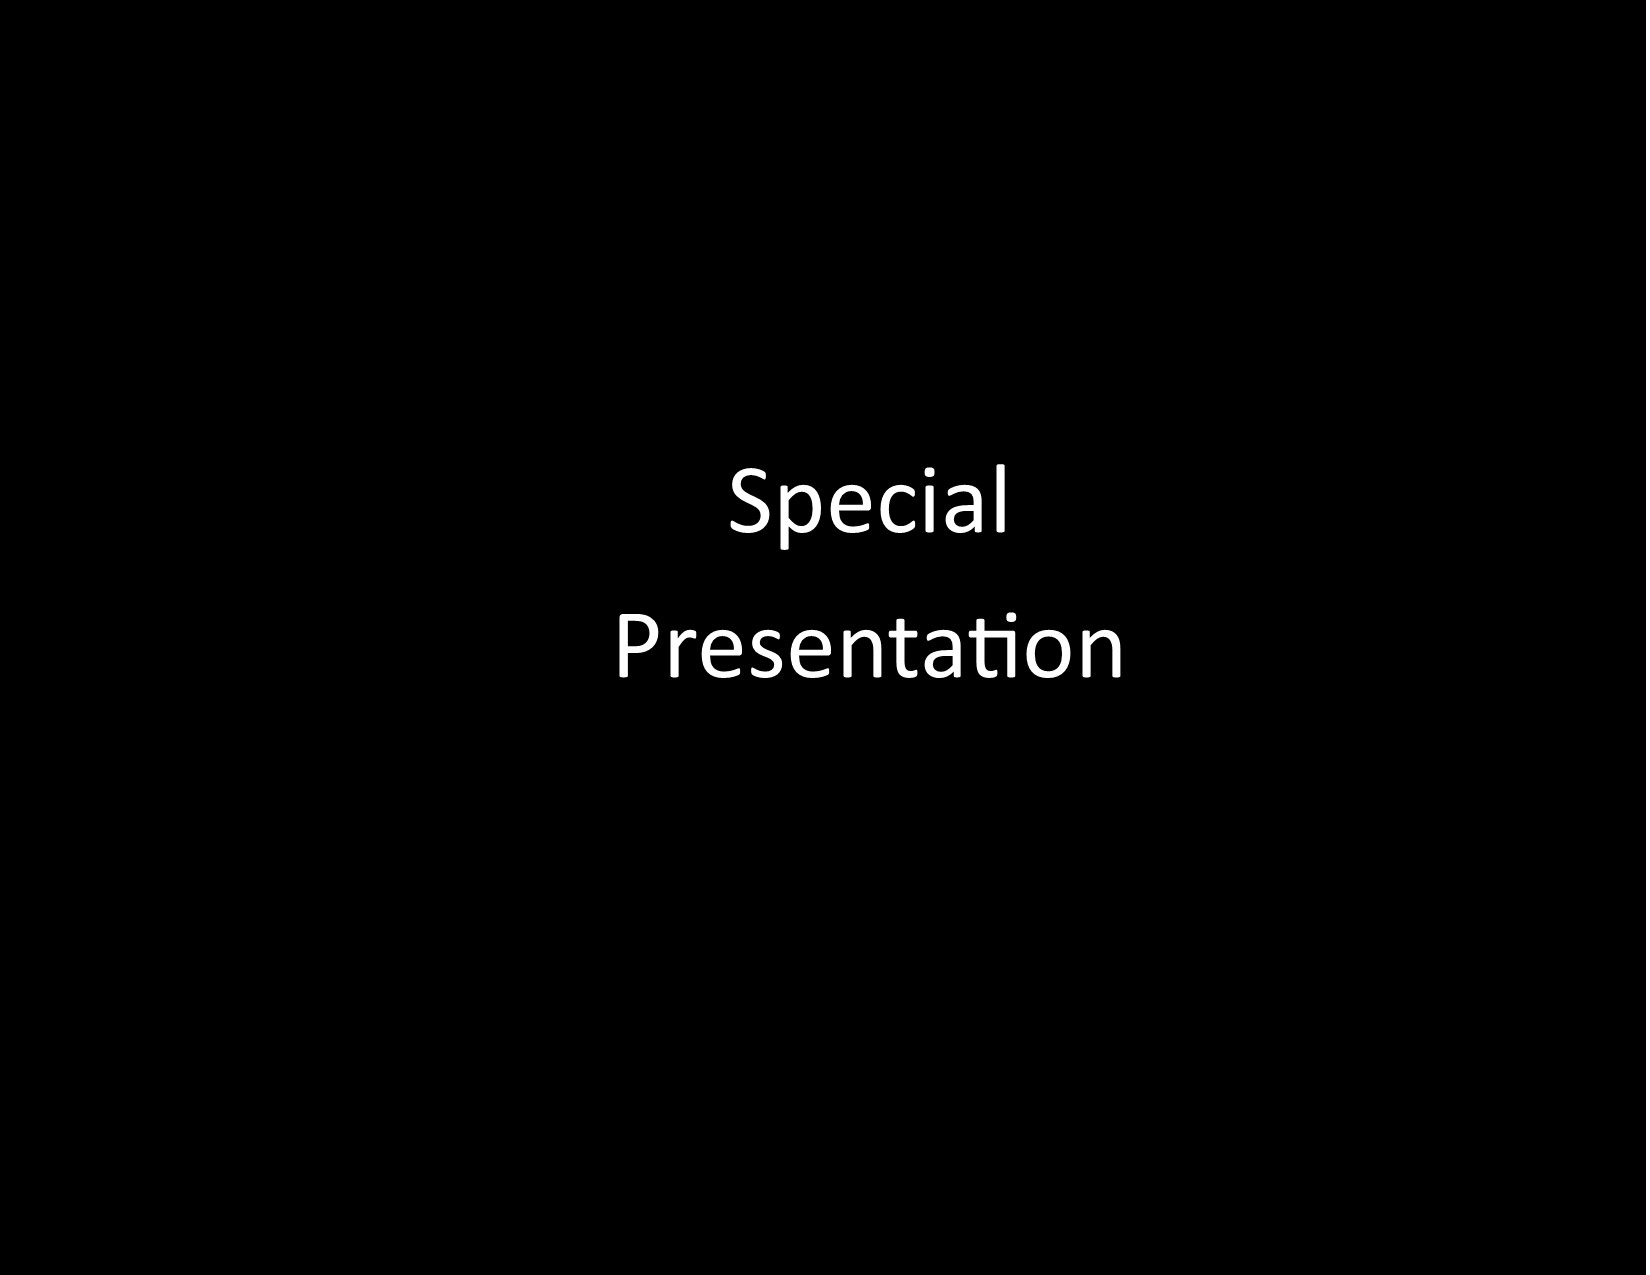 A Special Presentation